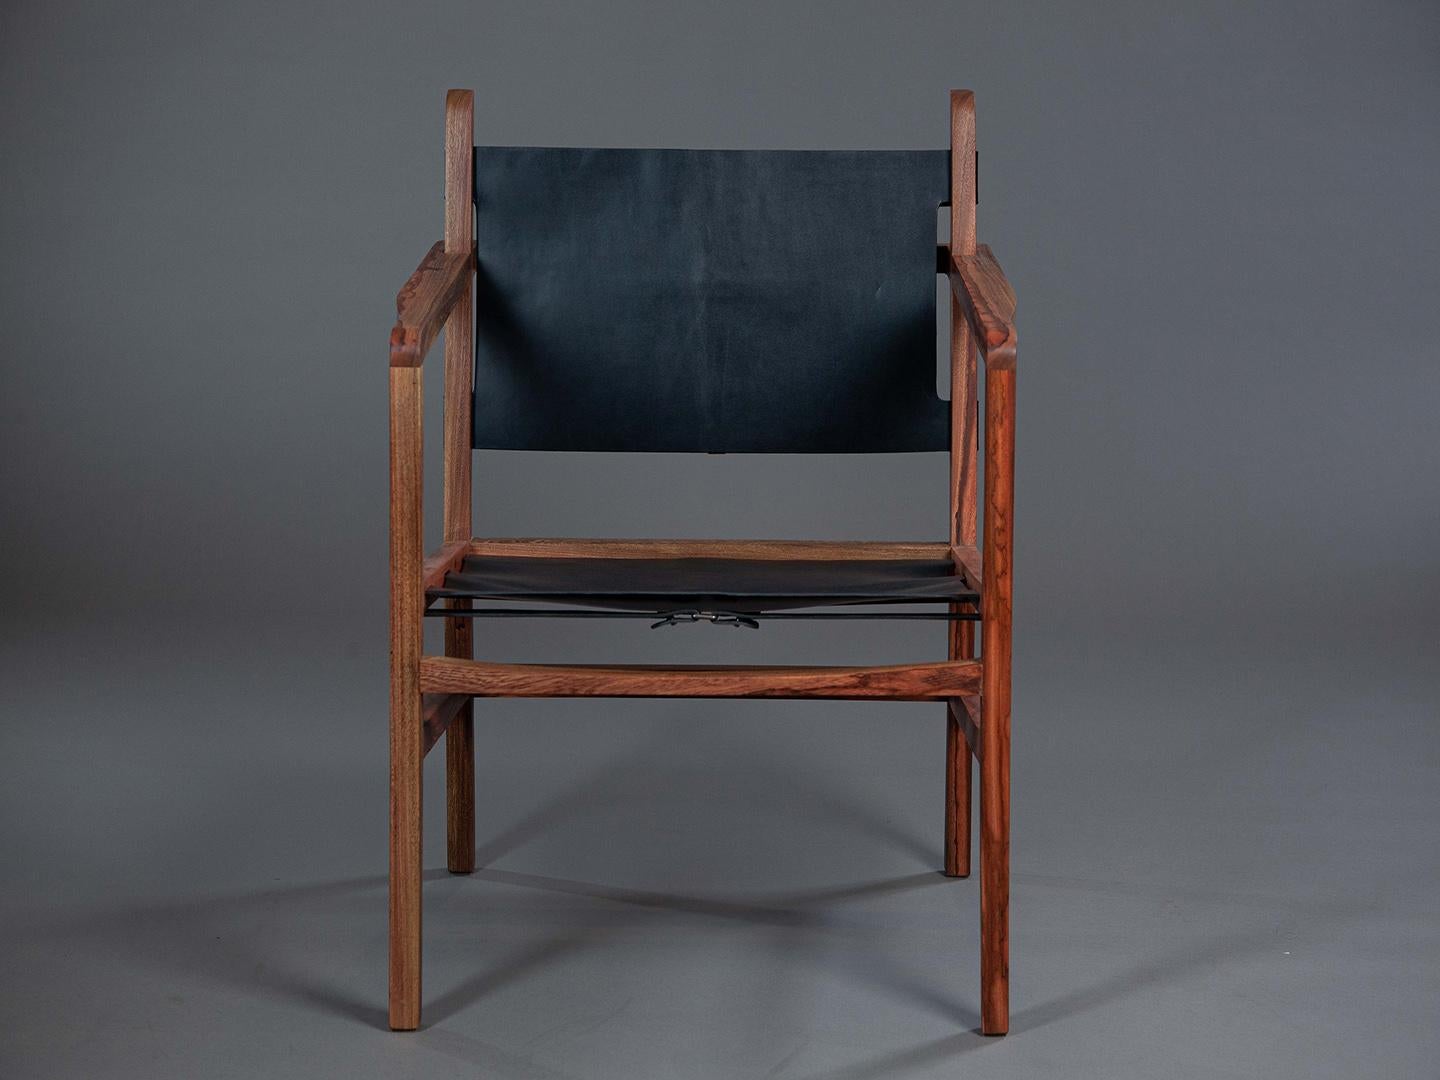 Le fauteuil Caetano s'inspire fortement du savoir-faire du maître Joaquim Tenreiro. Mon objectif était d'accentuer la beauté des bois rares utilisés dans sa fabrication, en harmonisant confort et modernité de manière équilibrée. L'assise et le